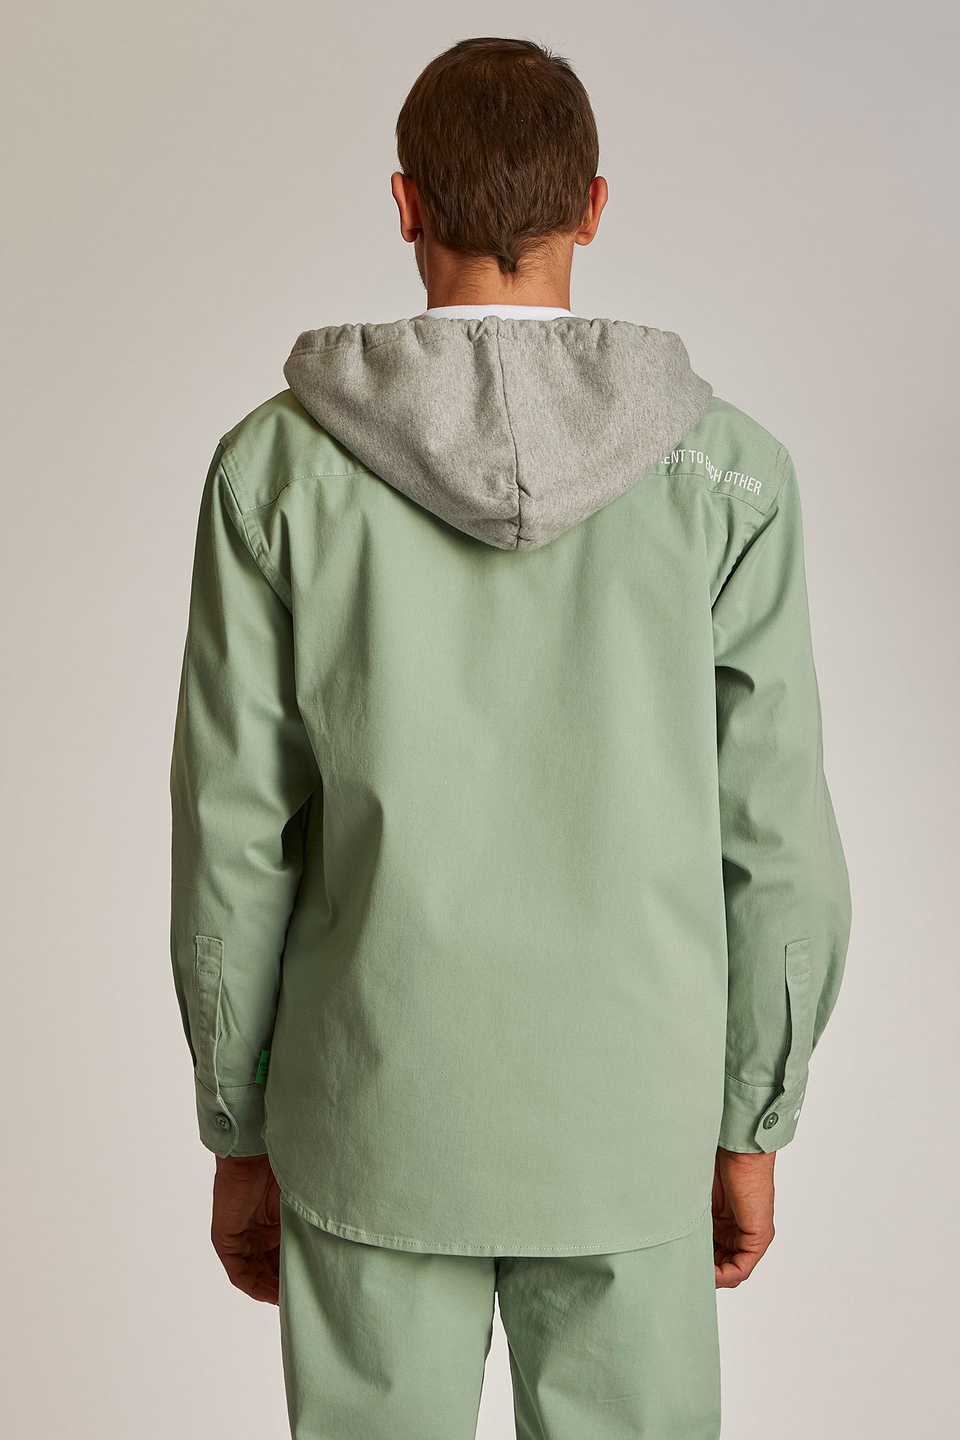 Giacca da uomo in cotone 100% con cappuccio modello over | La Martina - Official Online Shop